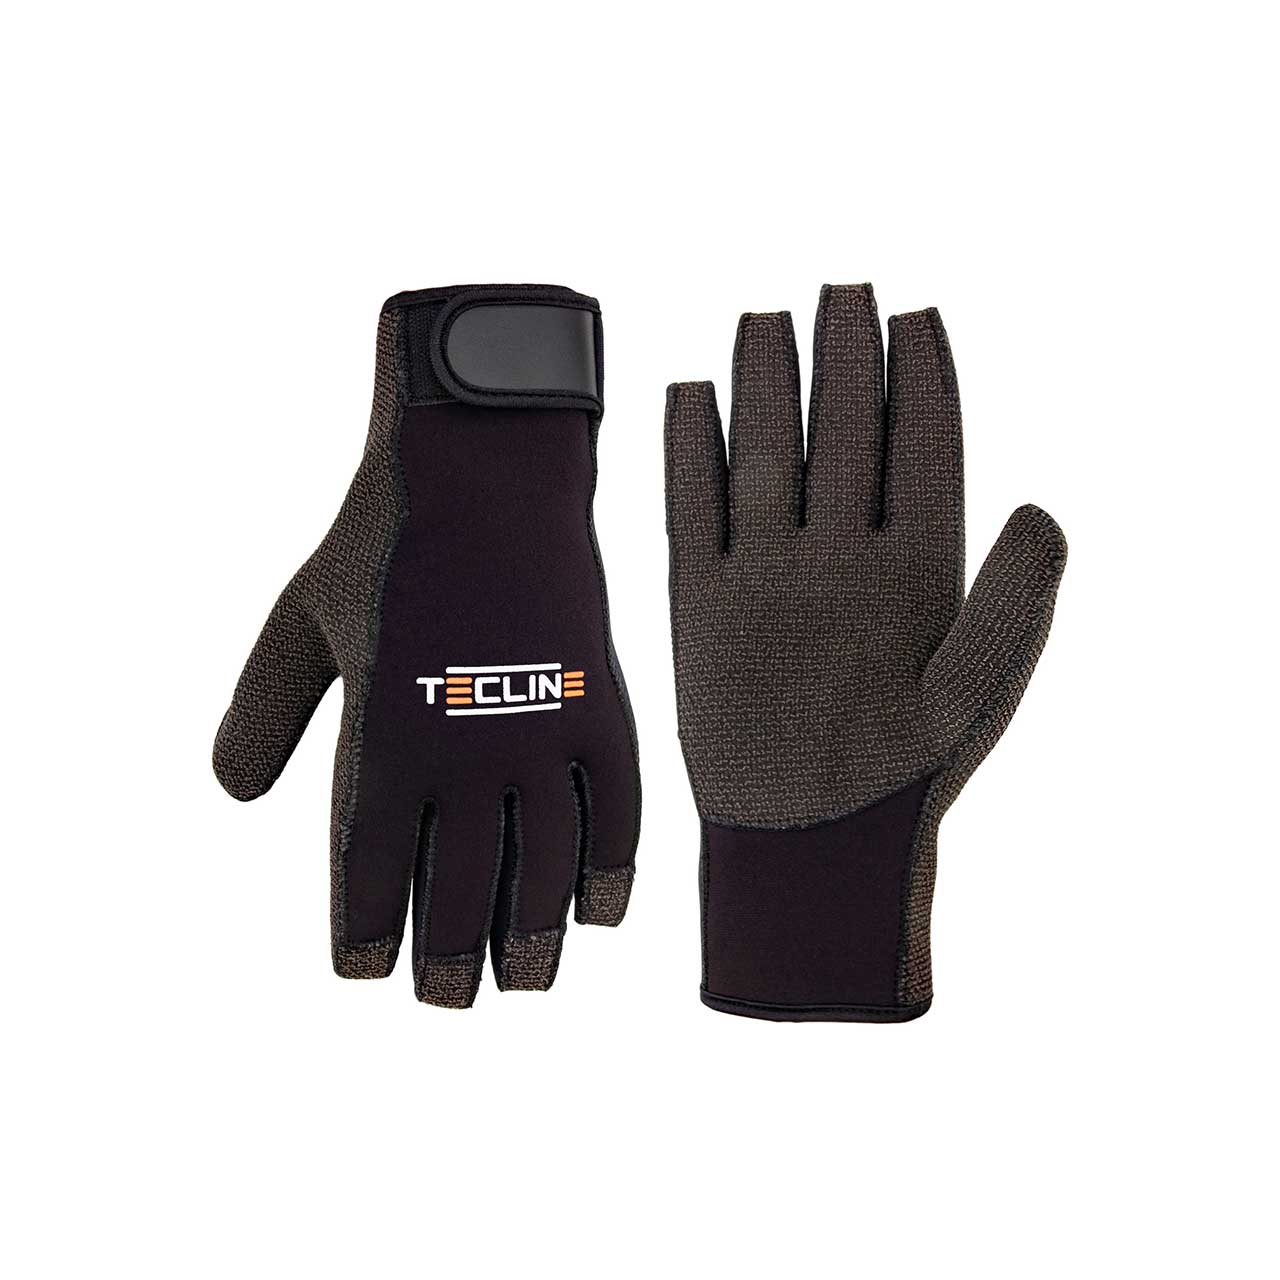 Tecline gloves kevlar 2.5 mm L T80106-3